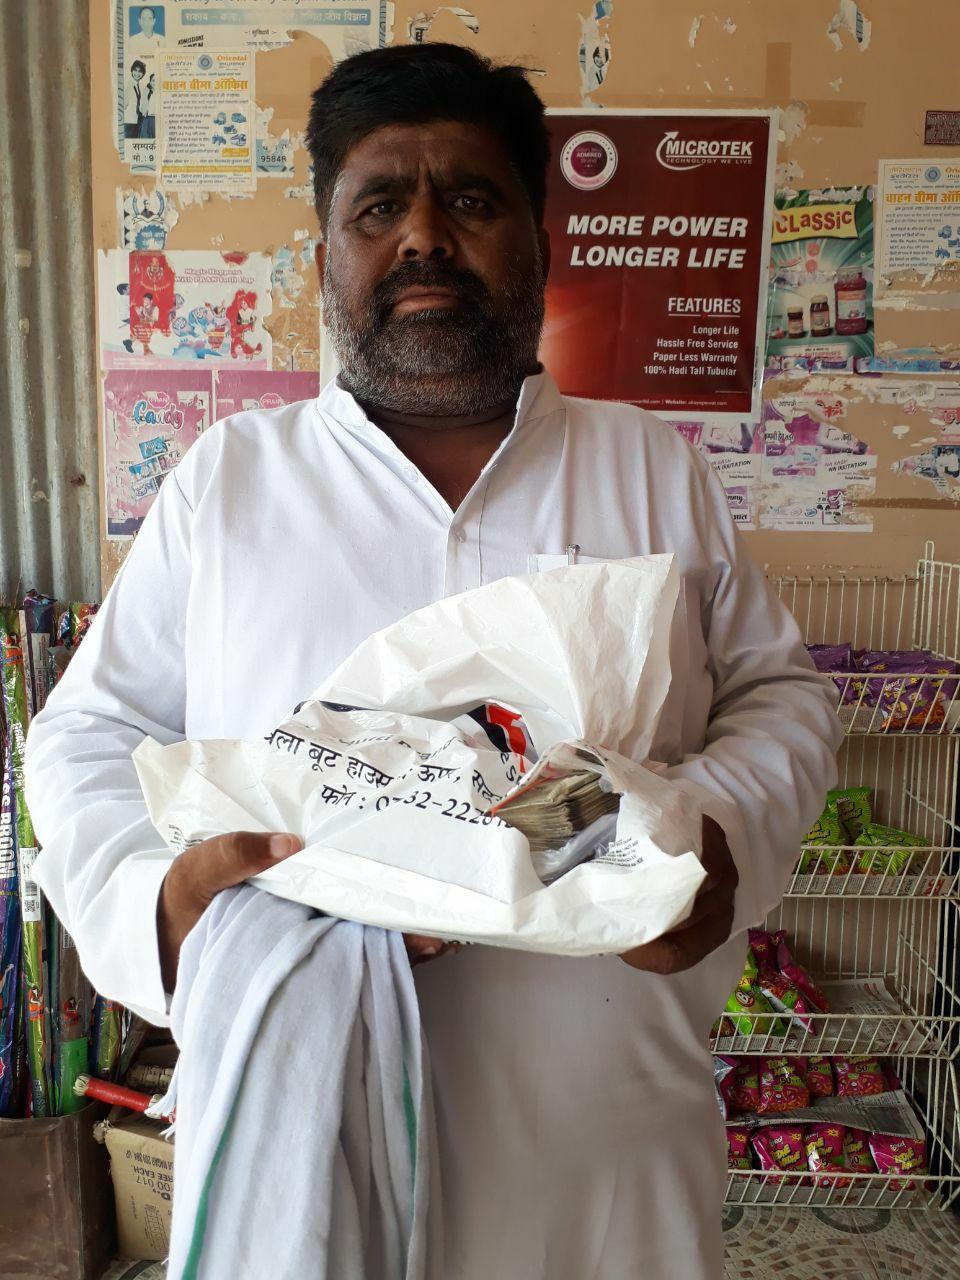 बैंक में पैसा जमा कराने आए किसान का बैग काटकर 50 हजार रुपए चोरी